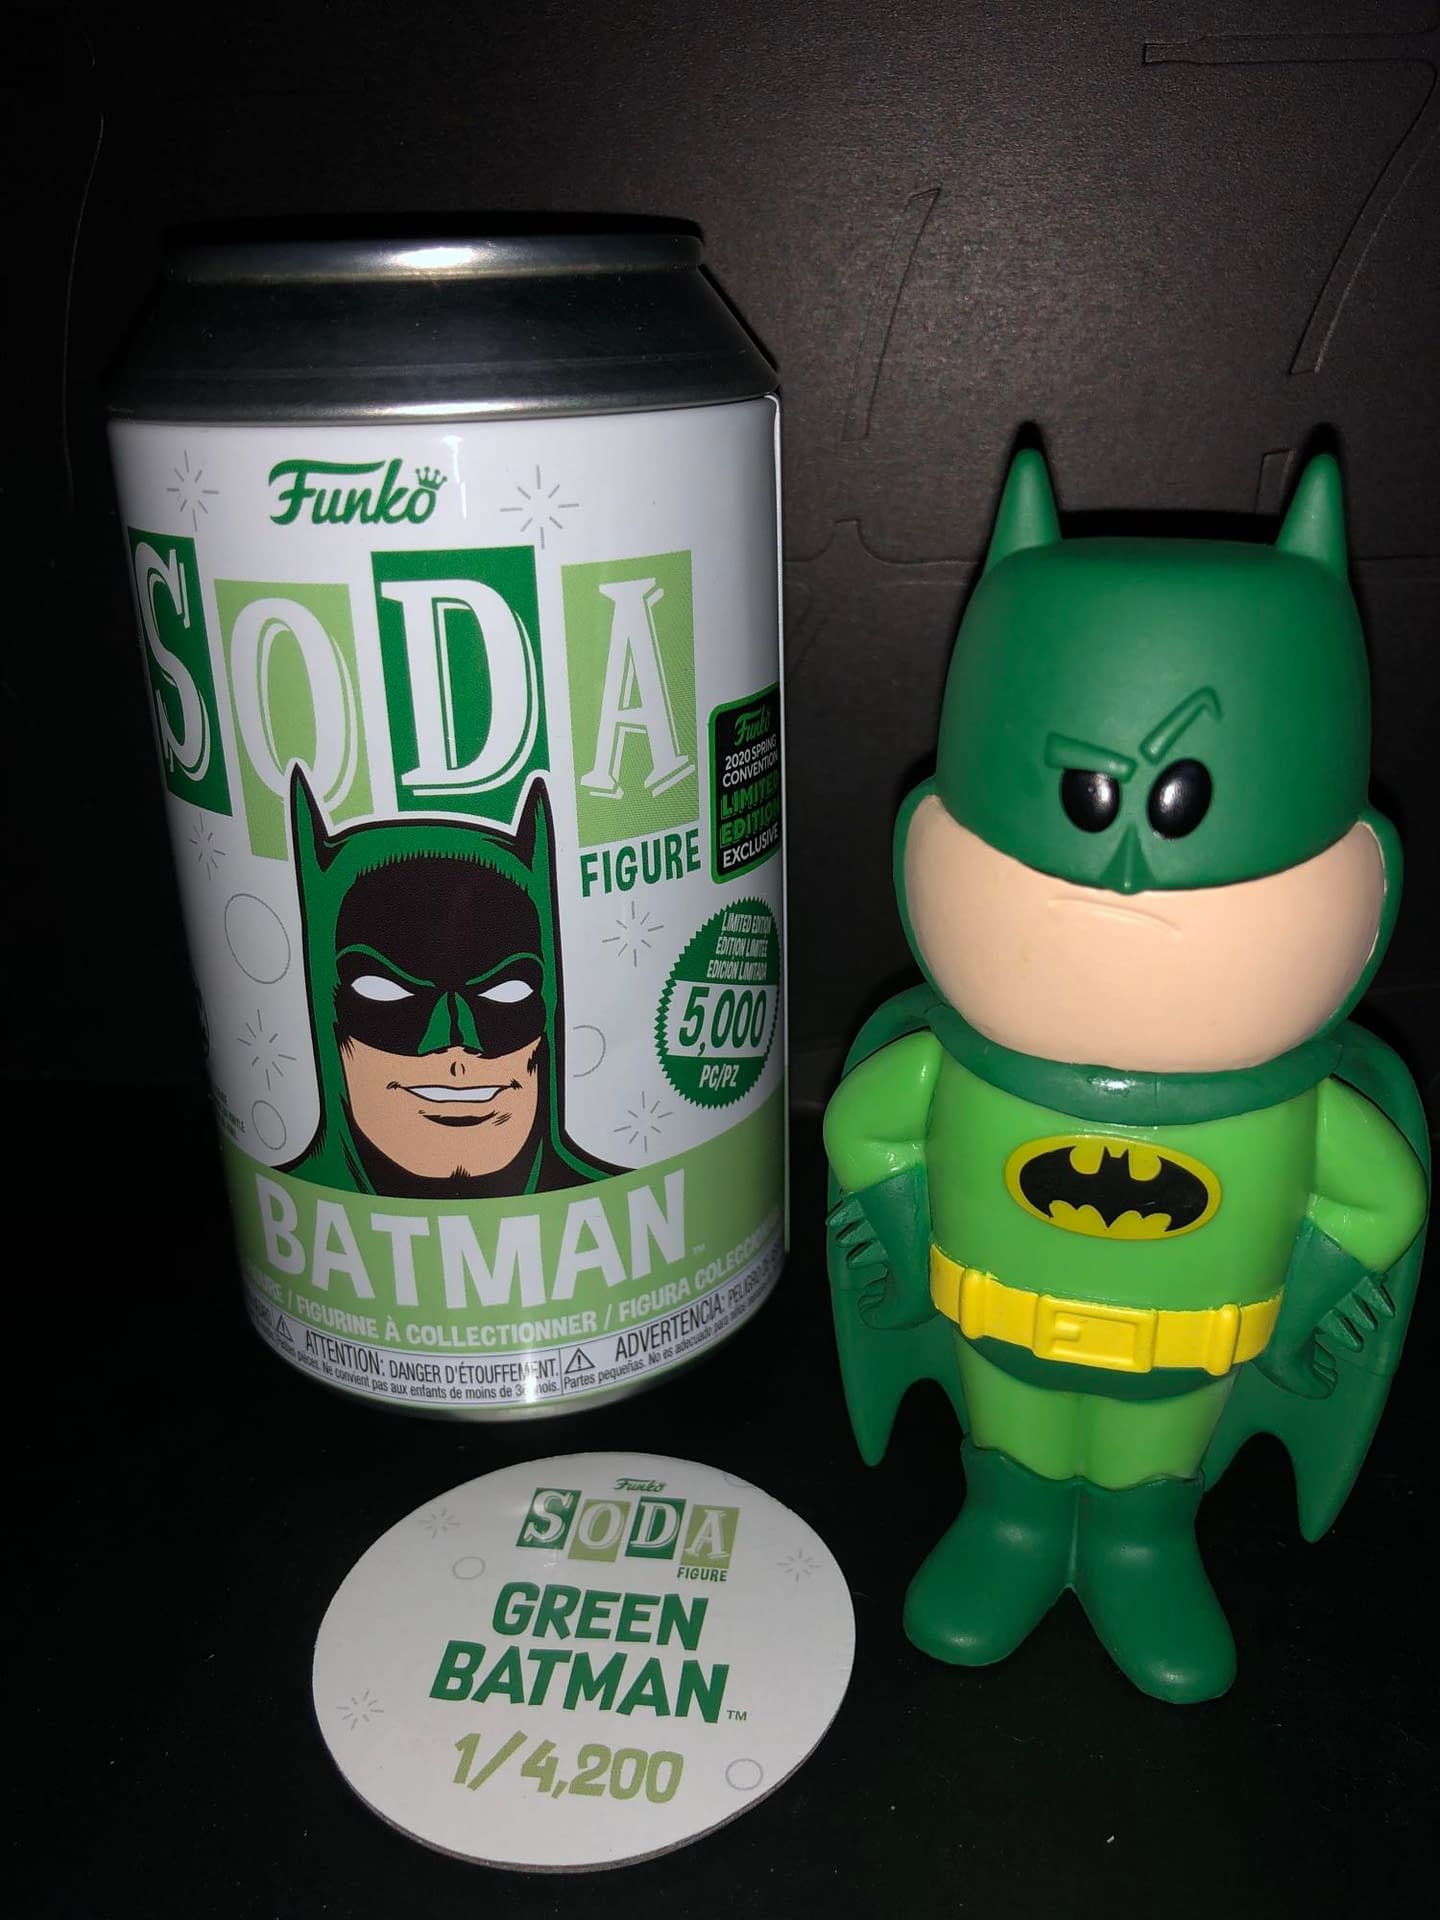 Funko Soda Vinyl Figure Emerald City Comic Con Exclusive Green Batman Figure, view of figure and can.